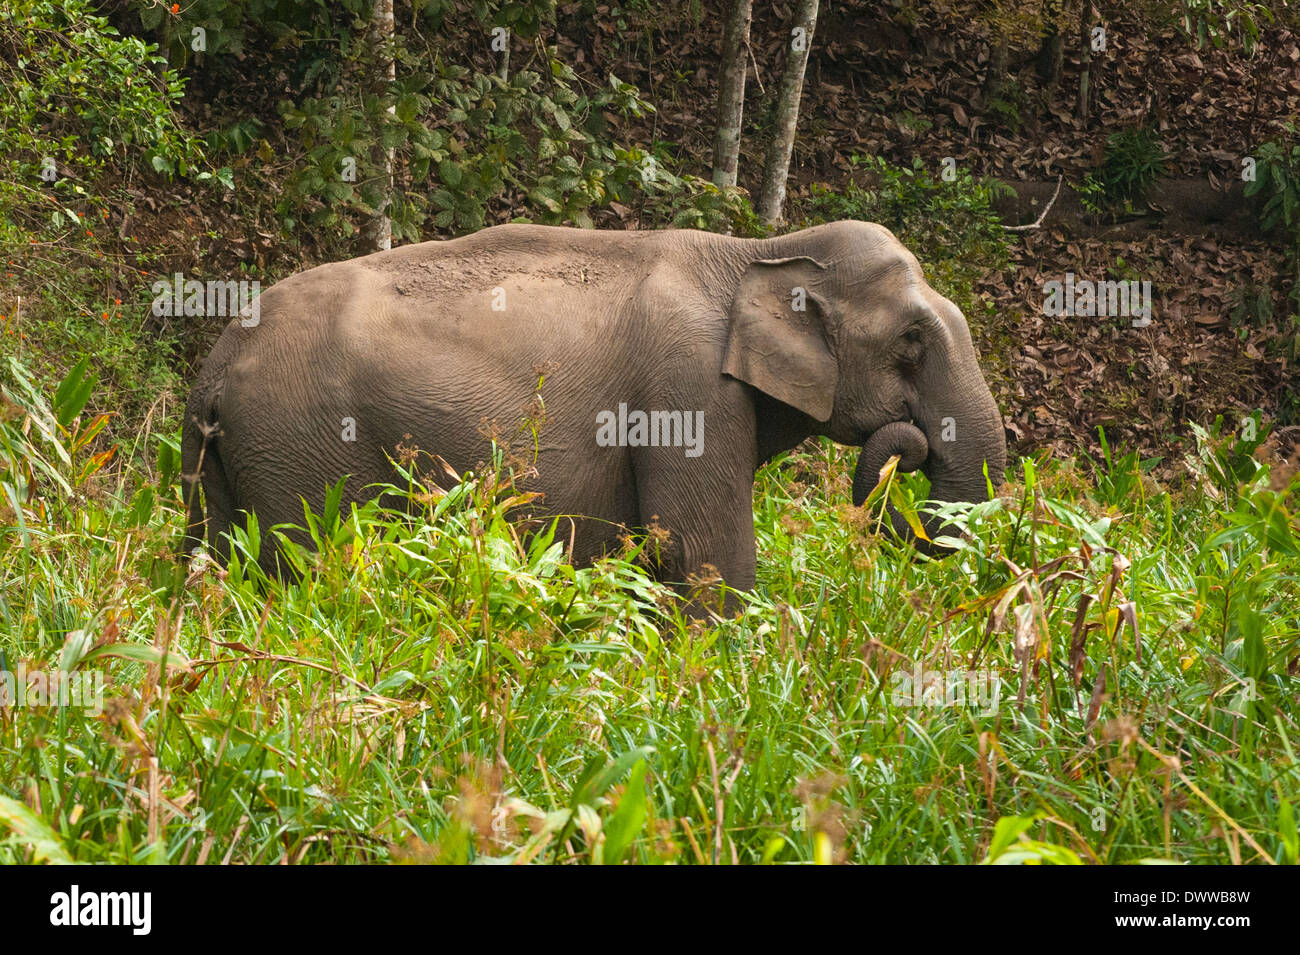 Sud Sud dell India Kerala Thekkady Parco Nazionale del Periyar paesaggio selvaggio della giungla elefante indiano il pascolo Elephas maximus indicus Foto Stock